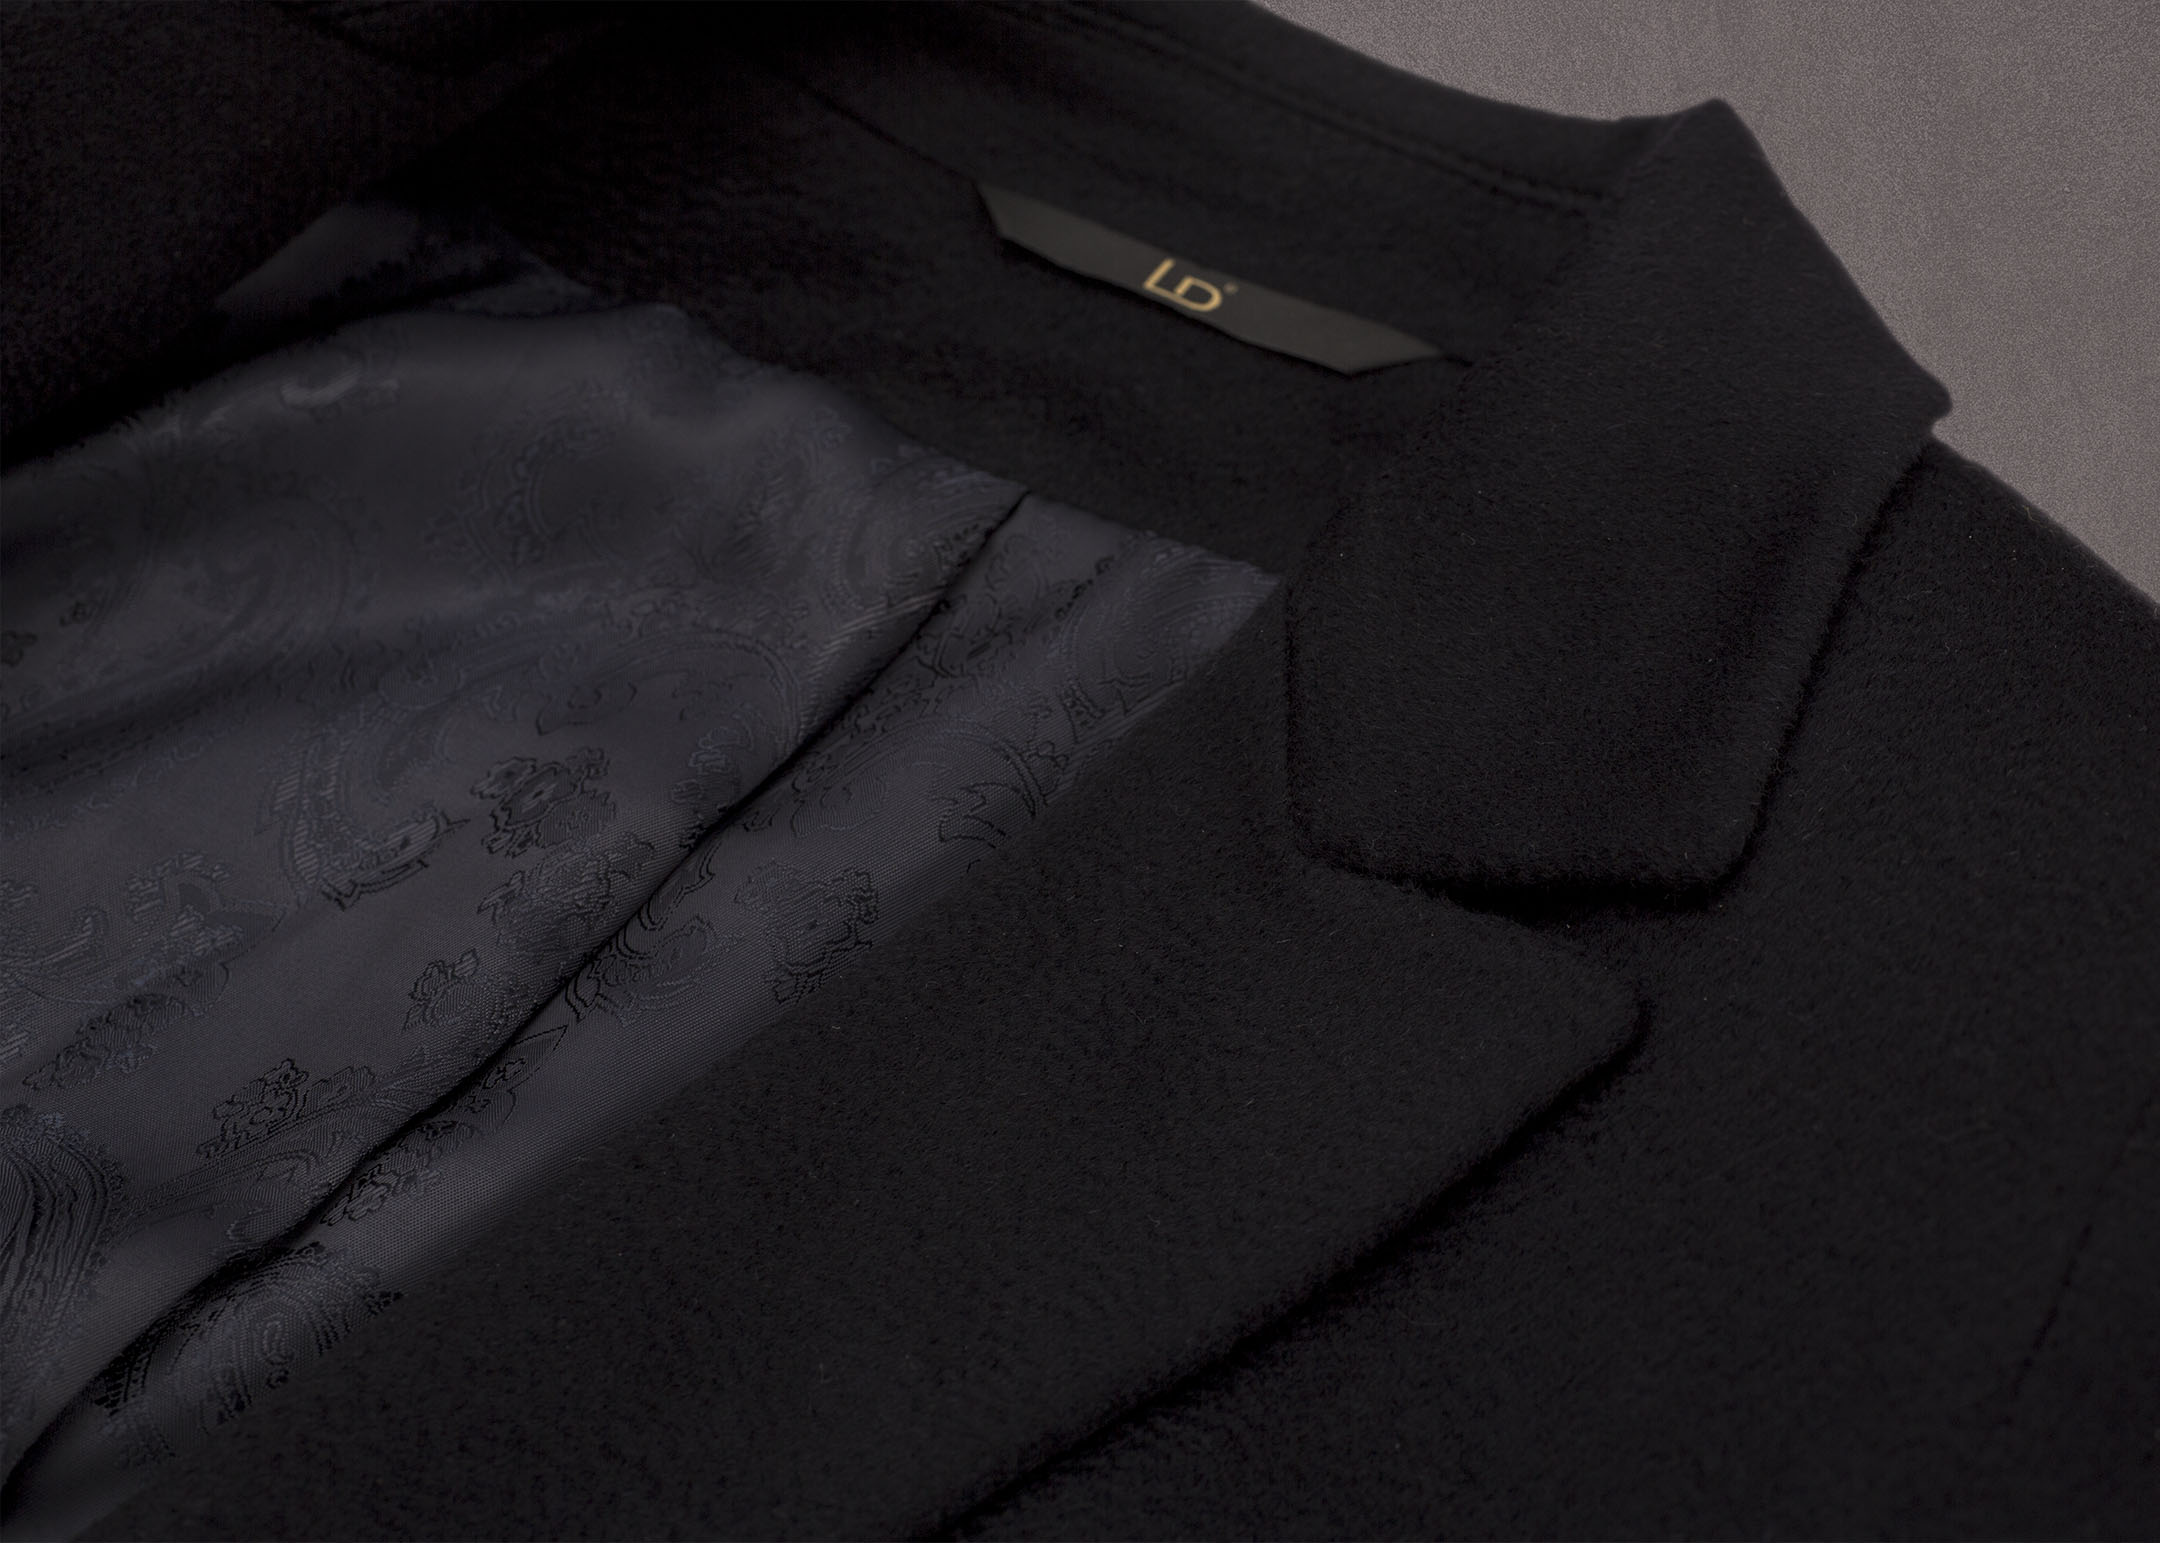 Meldes De Luxe – Manteau 100% cachemire cintré large col tailleur – Bleu nuit - Réf: 455-2-02